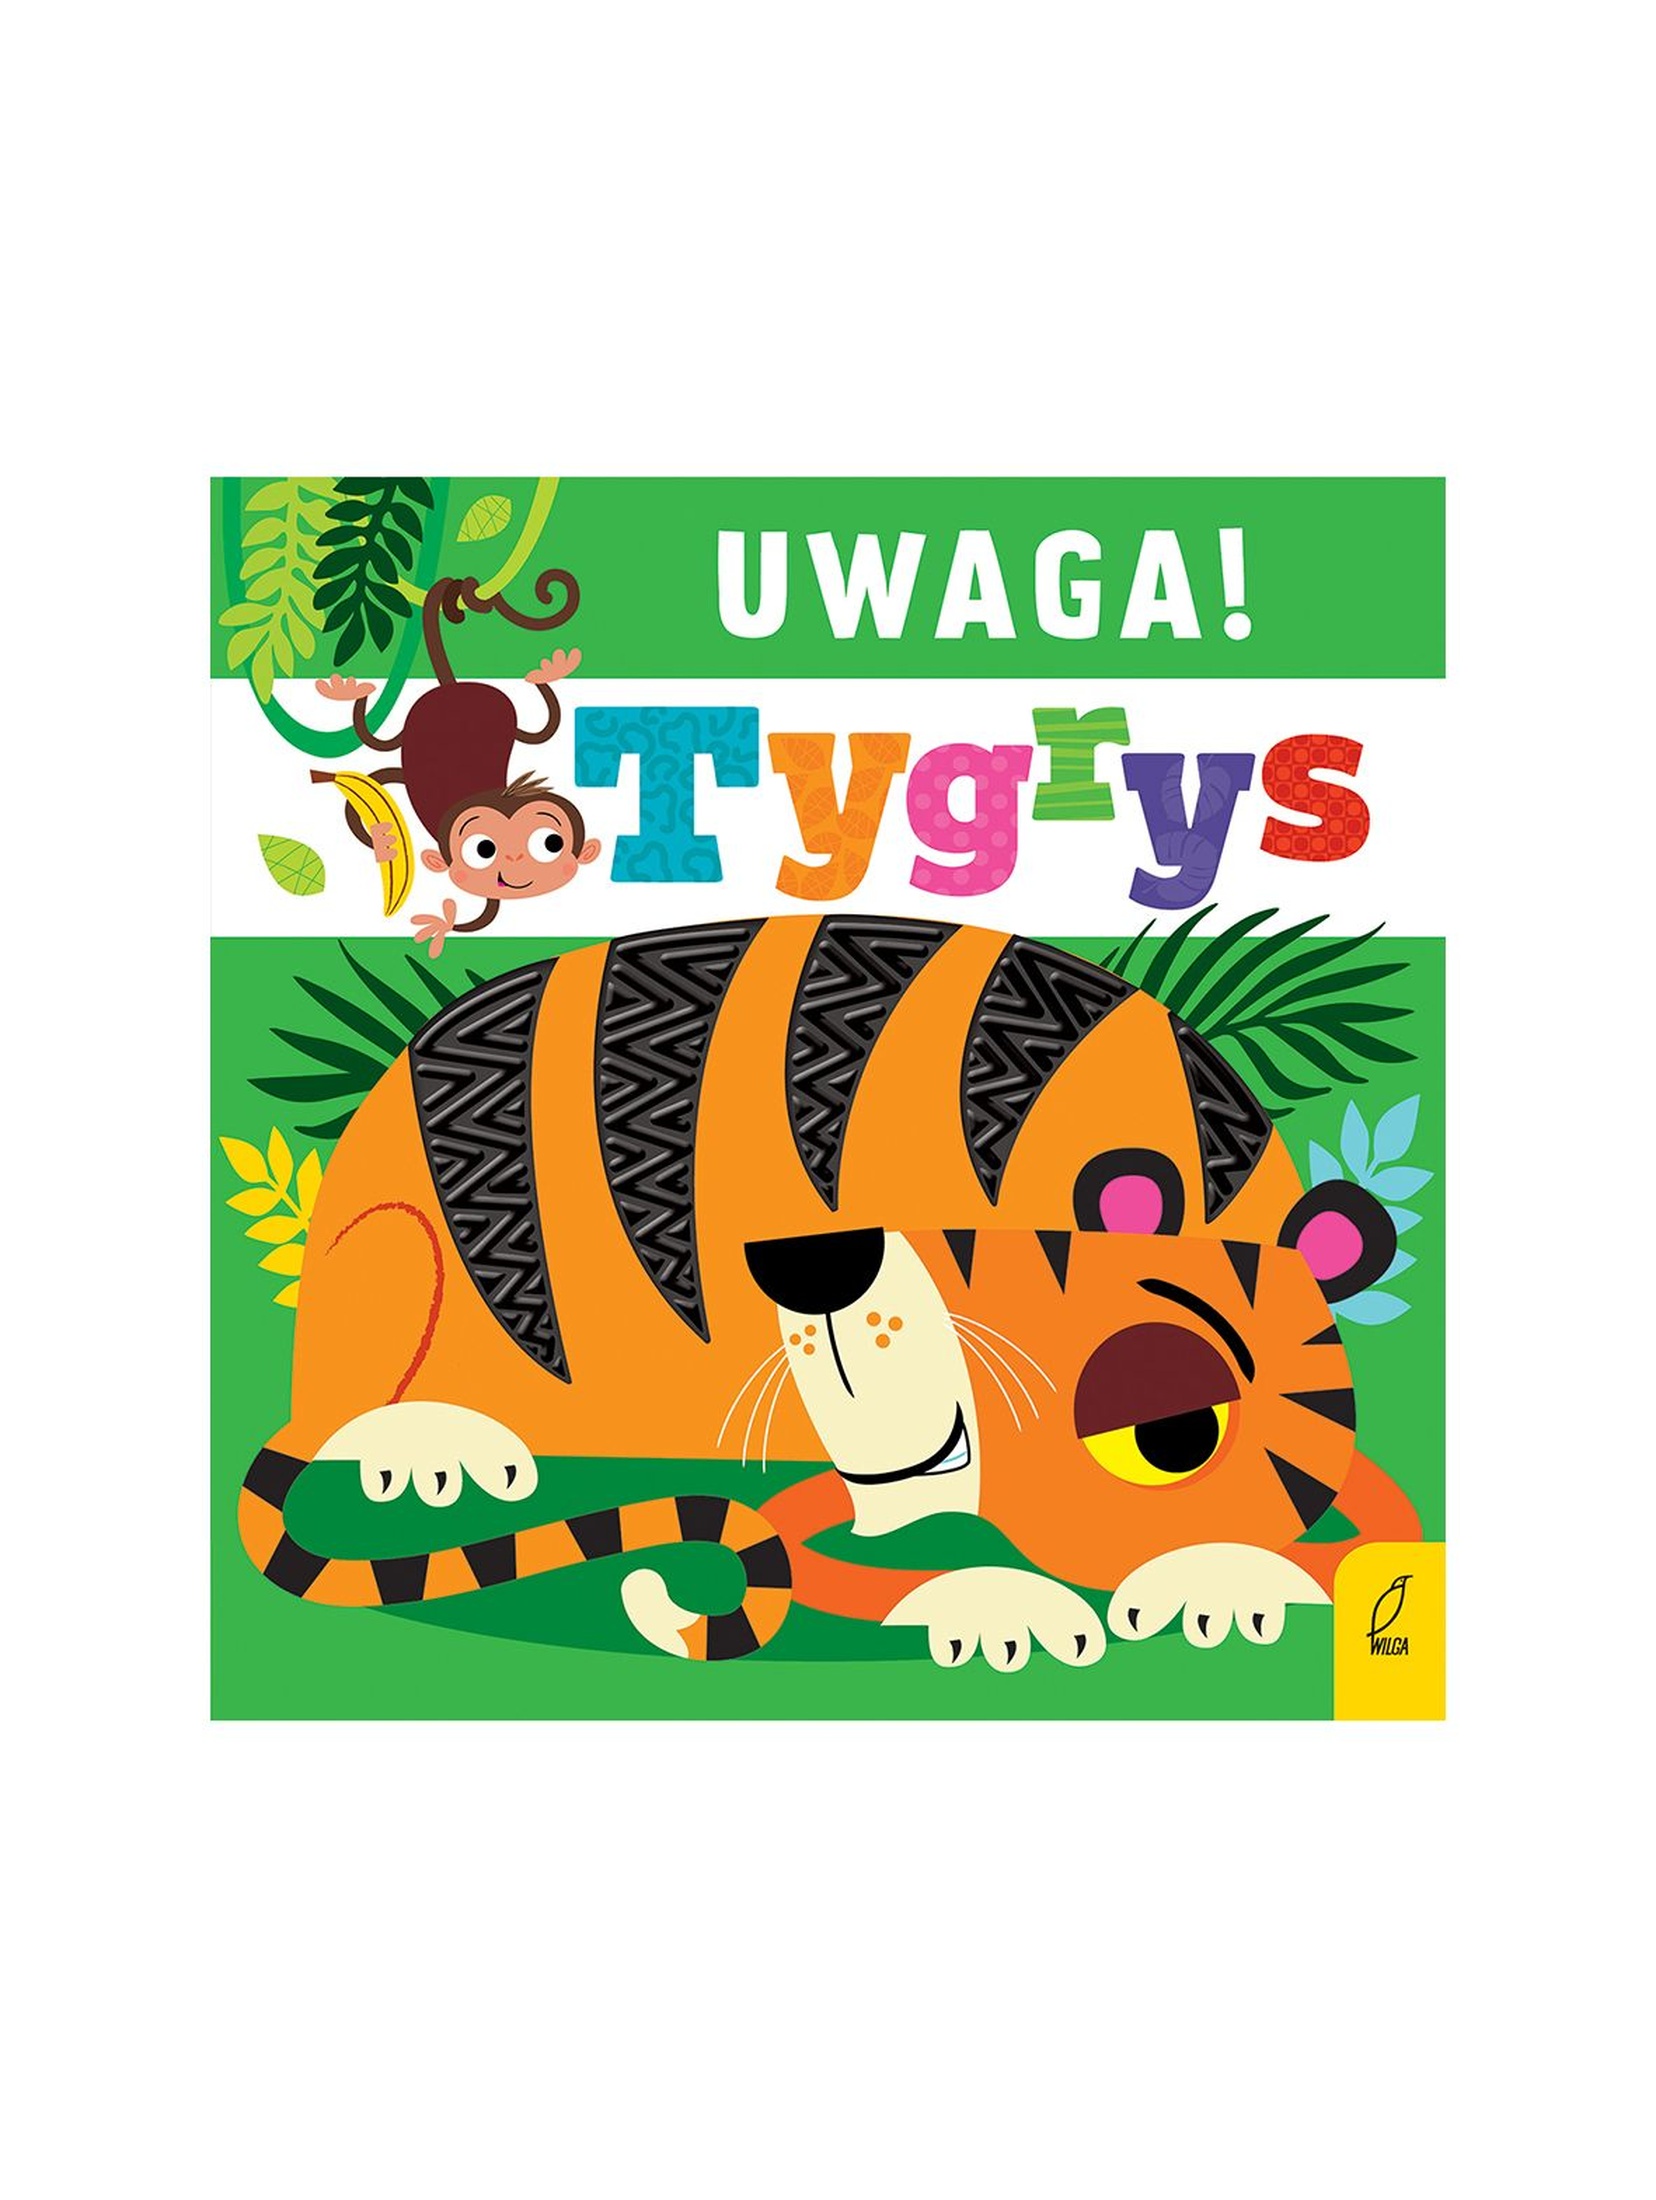 Uwaga, tygrys! Książka dla dzieci